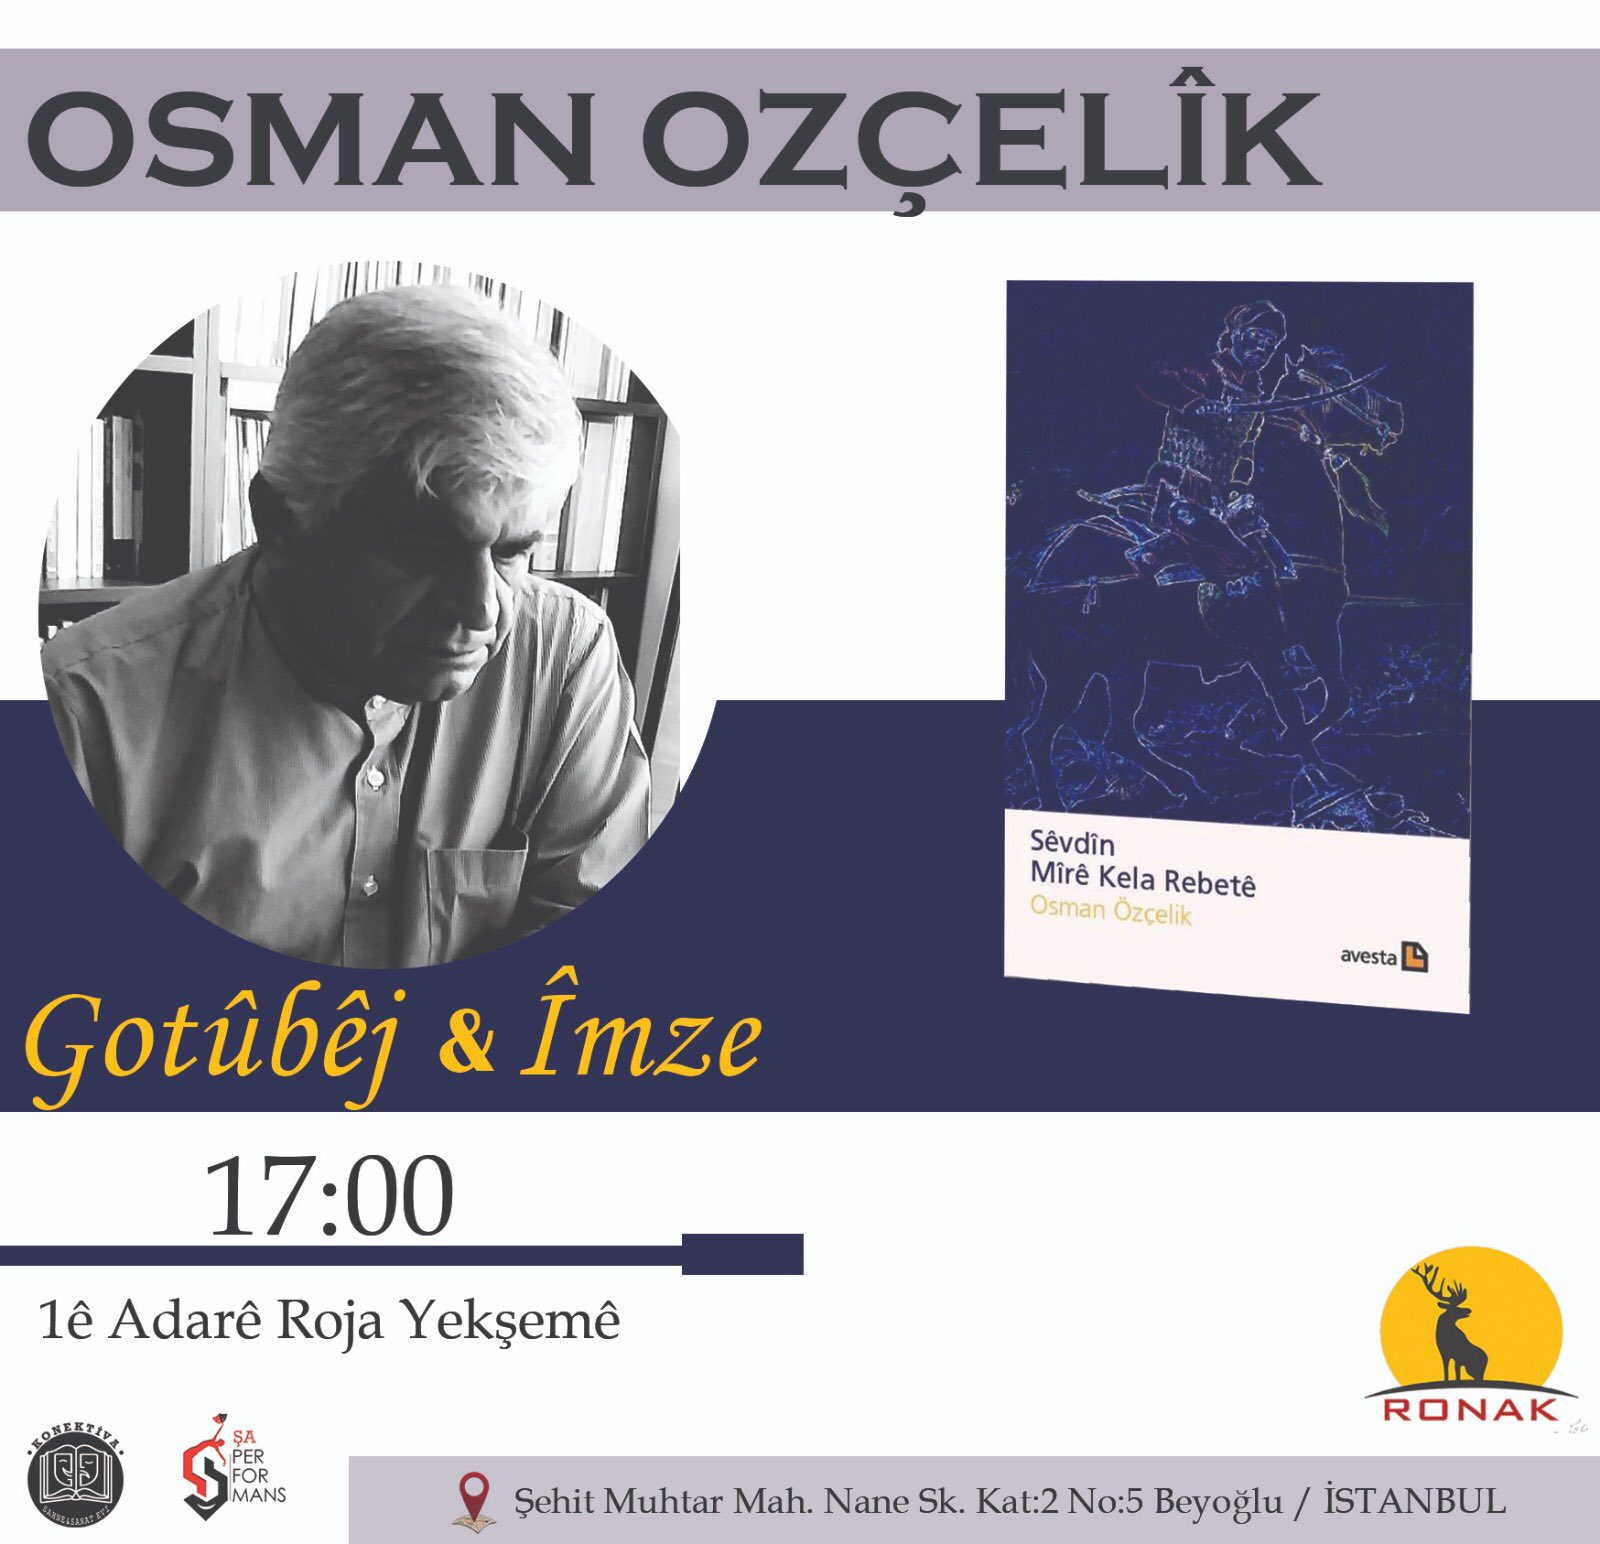 Osman Ozçelîk wê li Stenbolê behsa pirtûka xwe ya nû bike